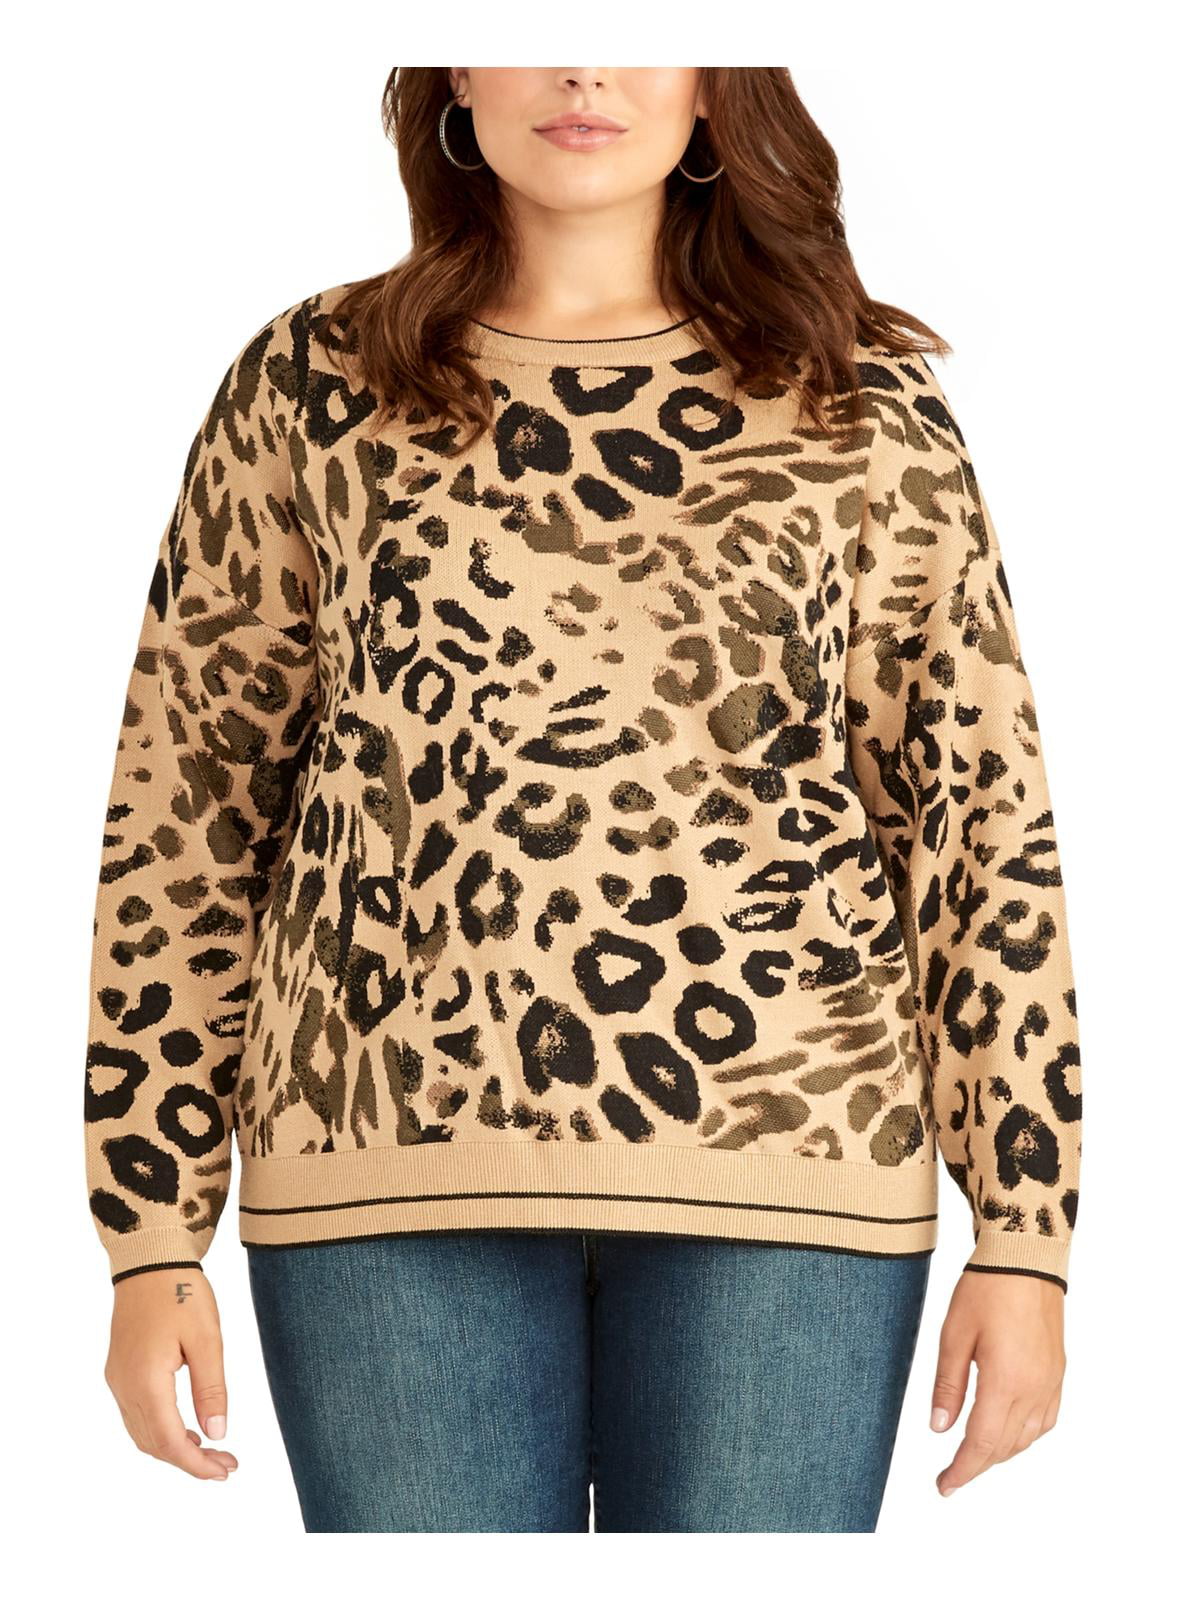 INC International Concepts Women's Plus Size Cold-Shoulder Sweater 1X, Leopard